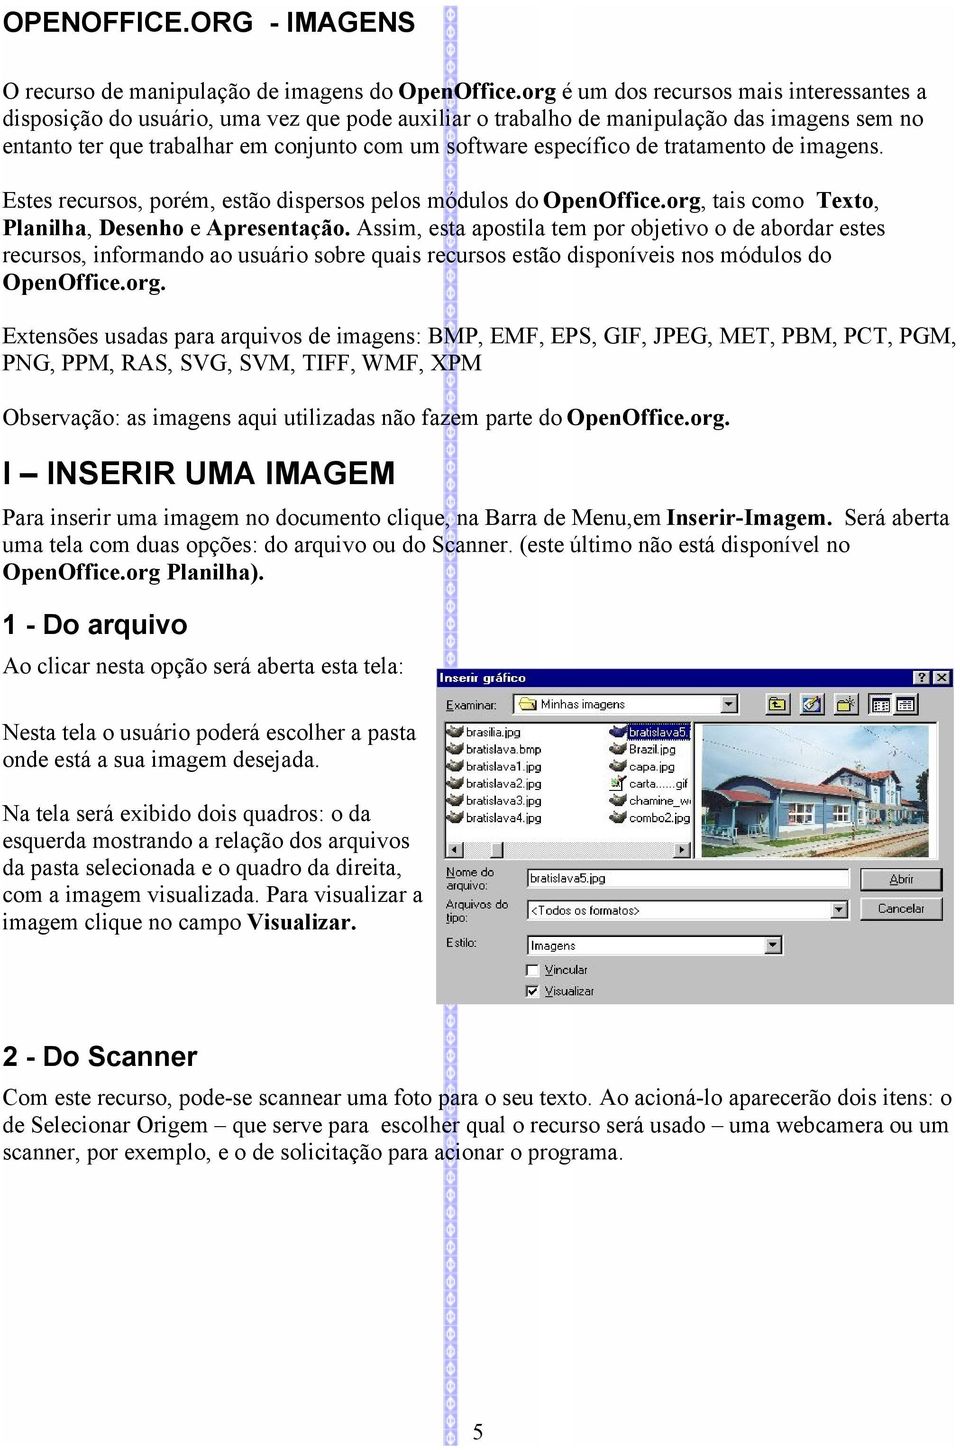 específico de tratamento de imagens. Estes recursos, porém, estão dispersos pelos módulos do OpenOffice.org, tais como Texto, Planilha, Desenho e Apresentação.